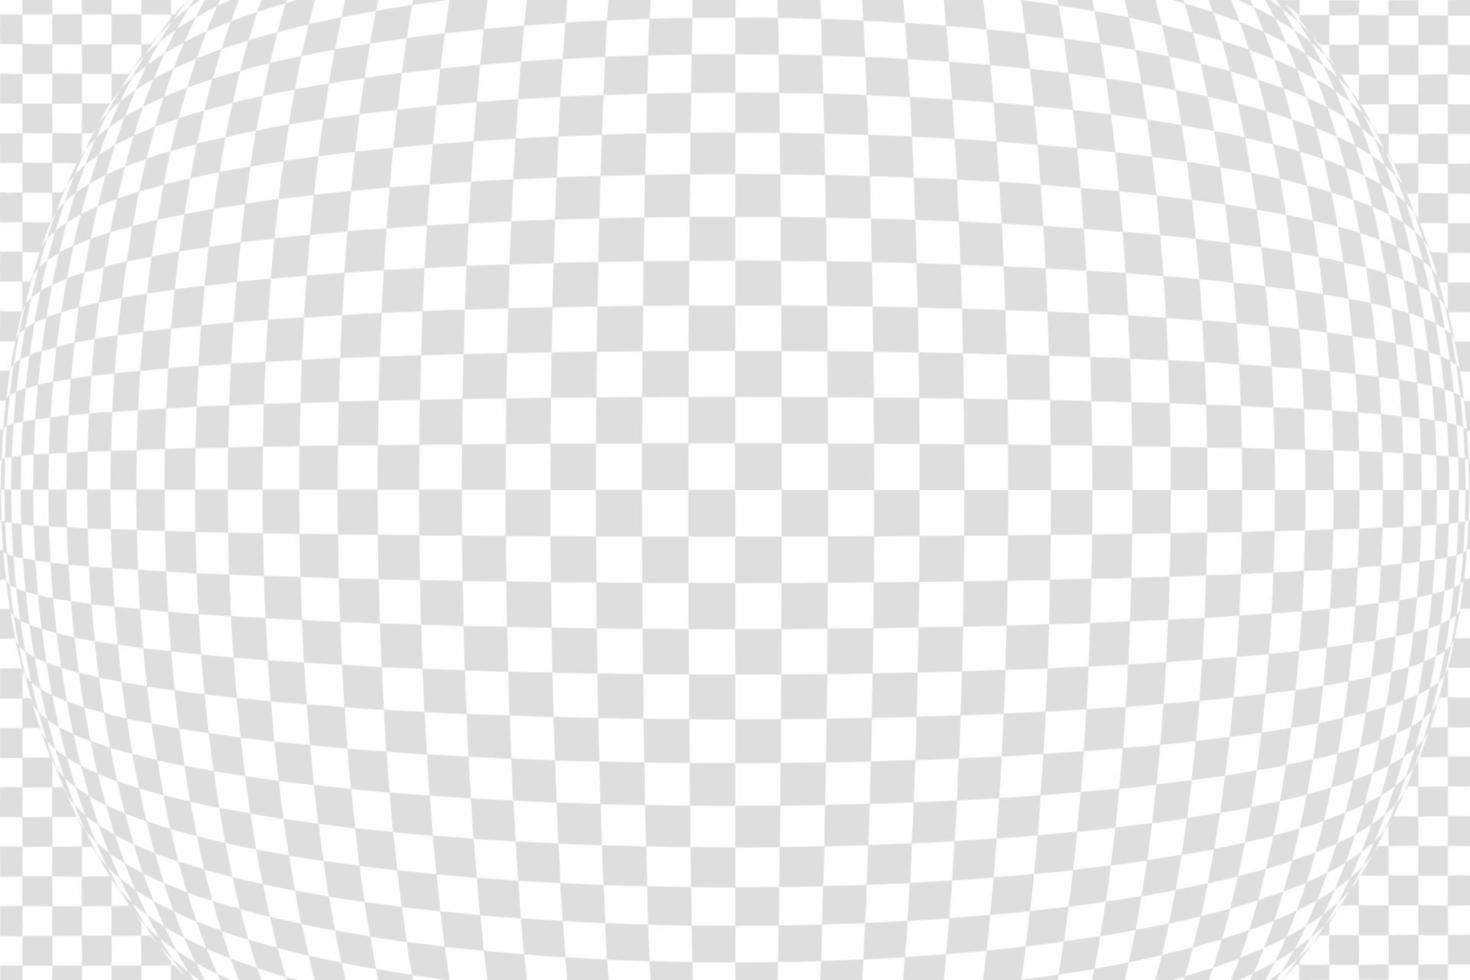 damier gris horizontal avec effet de lentille fisheye, illustration vectorielle vecteur